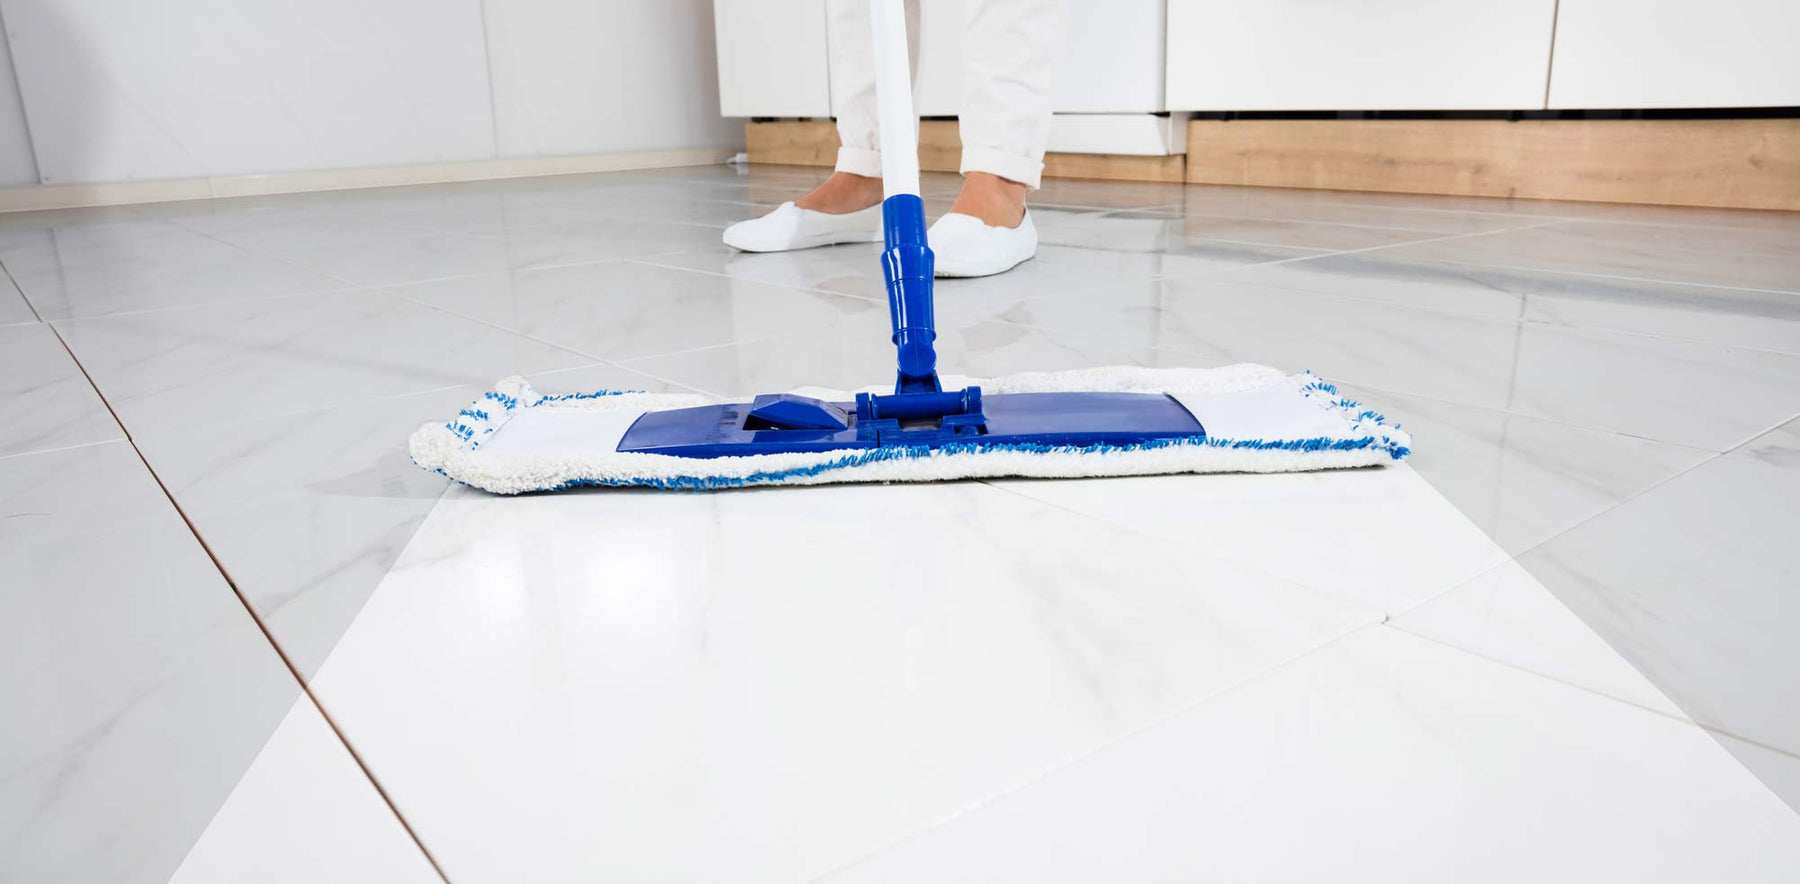 mop cleaning kitchen tiles floor